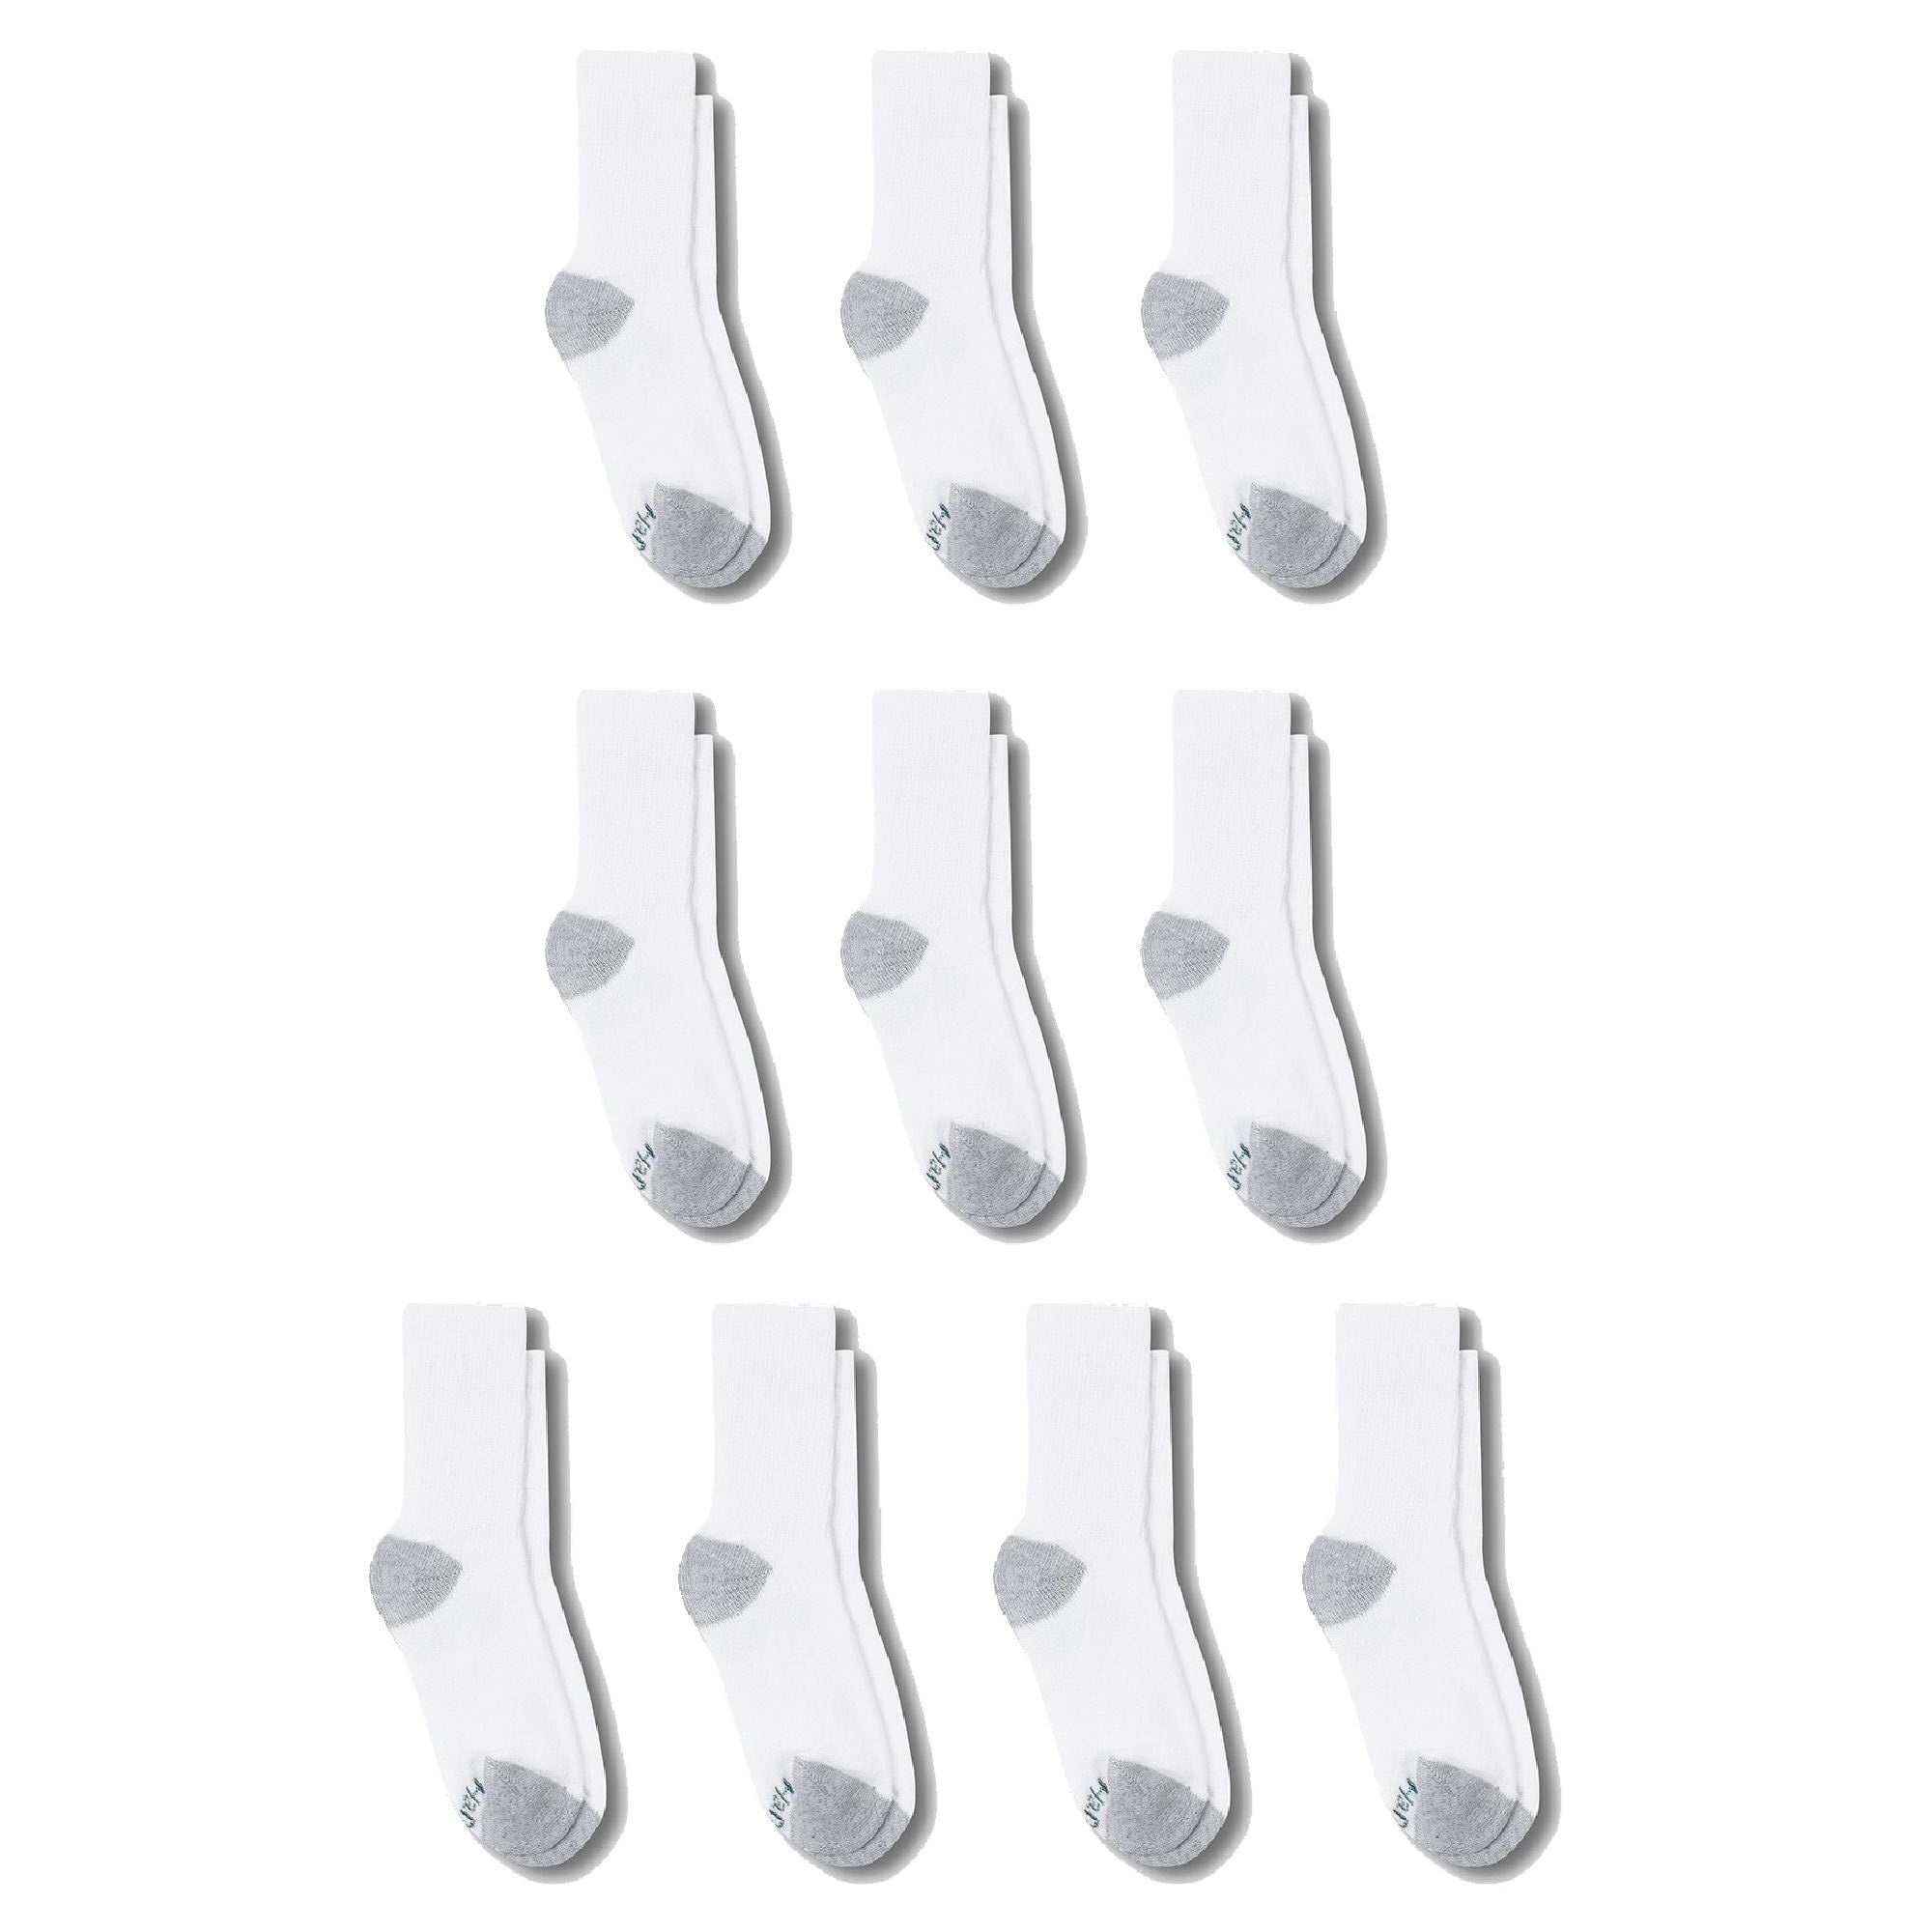 L Select SZ/Color. Pack of 10 Hanes Boys 8-20 Socks Big Classic Low Cut 